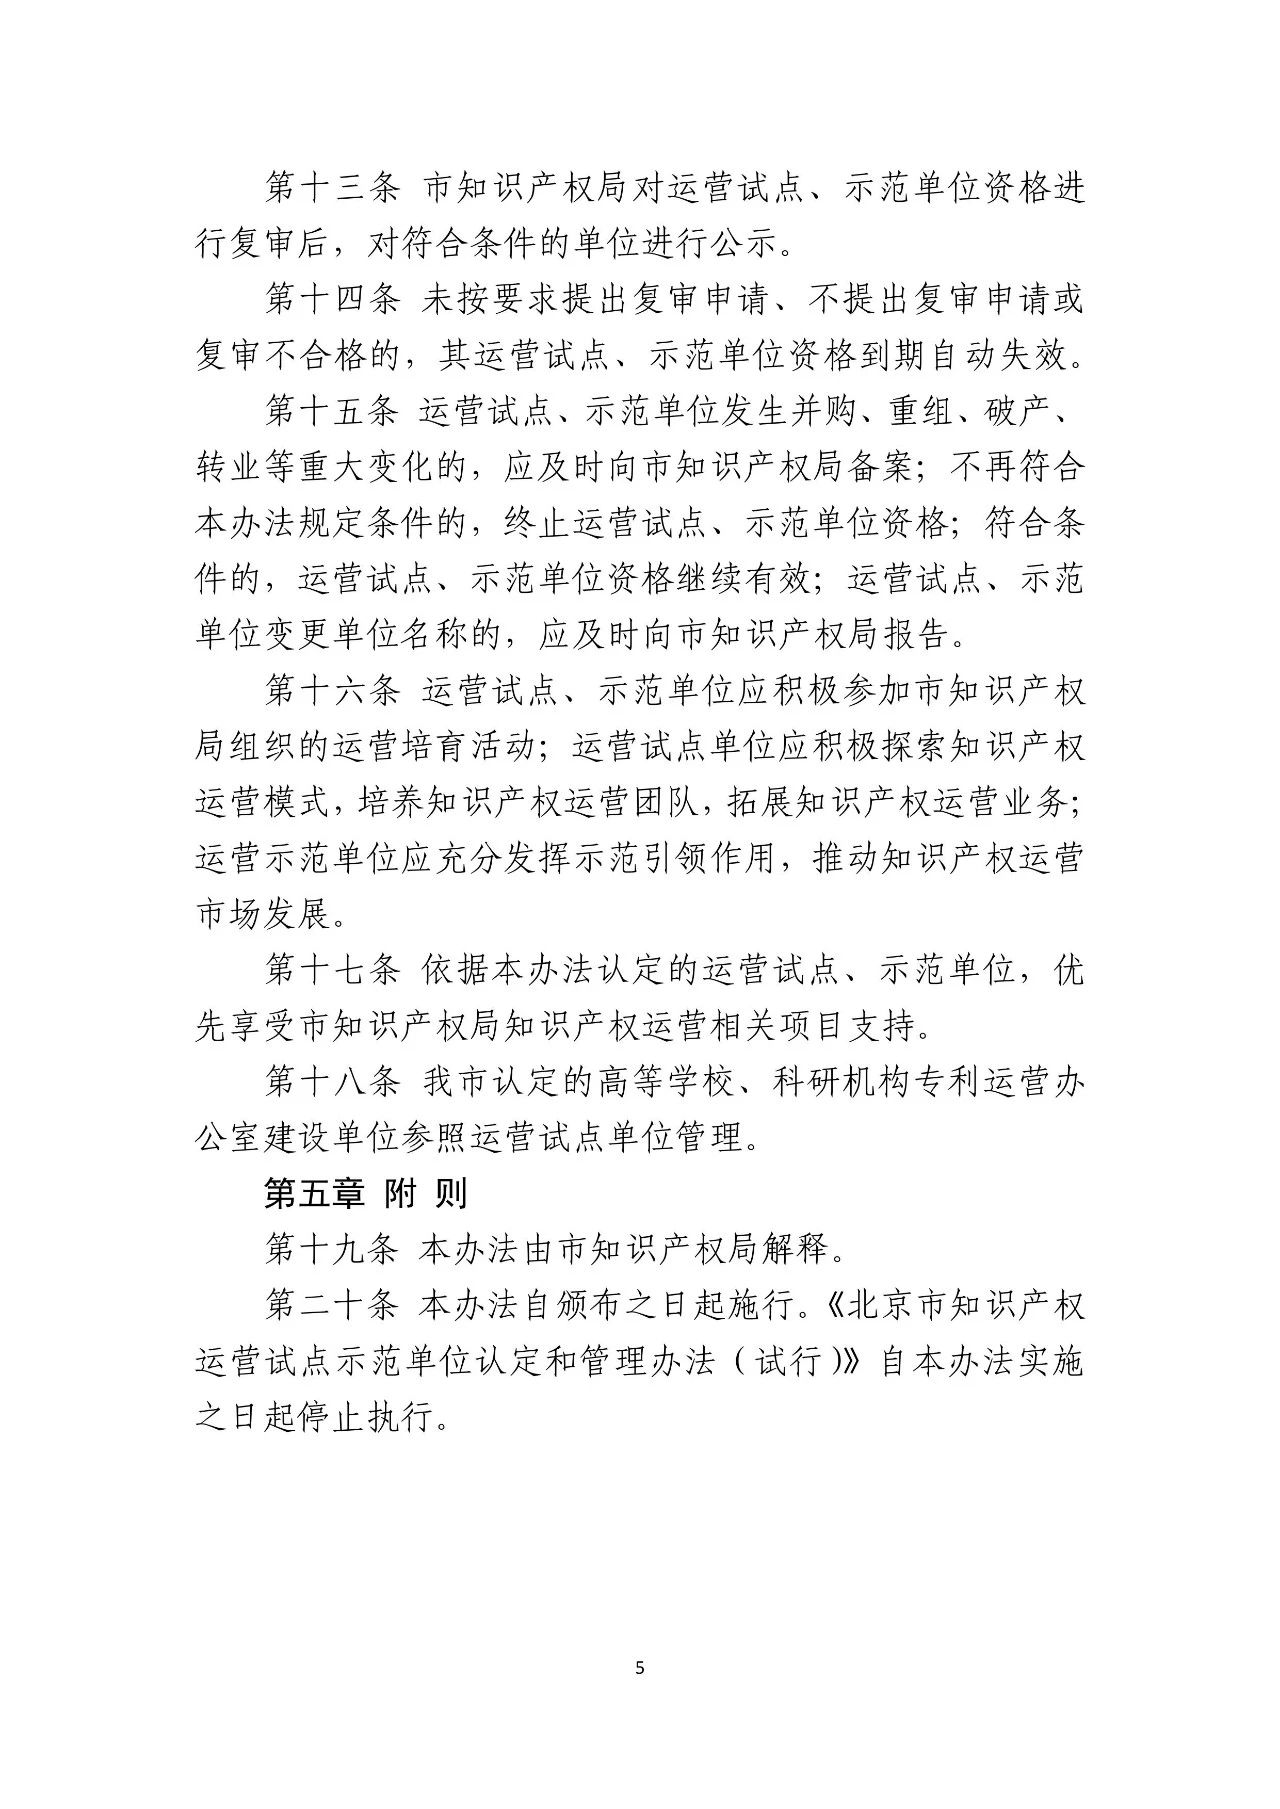 《北京市知识产权运营试点示范单位认定与管理办法》全文